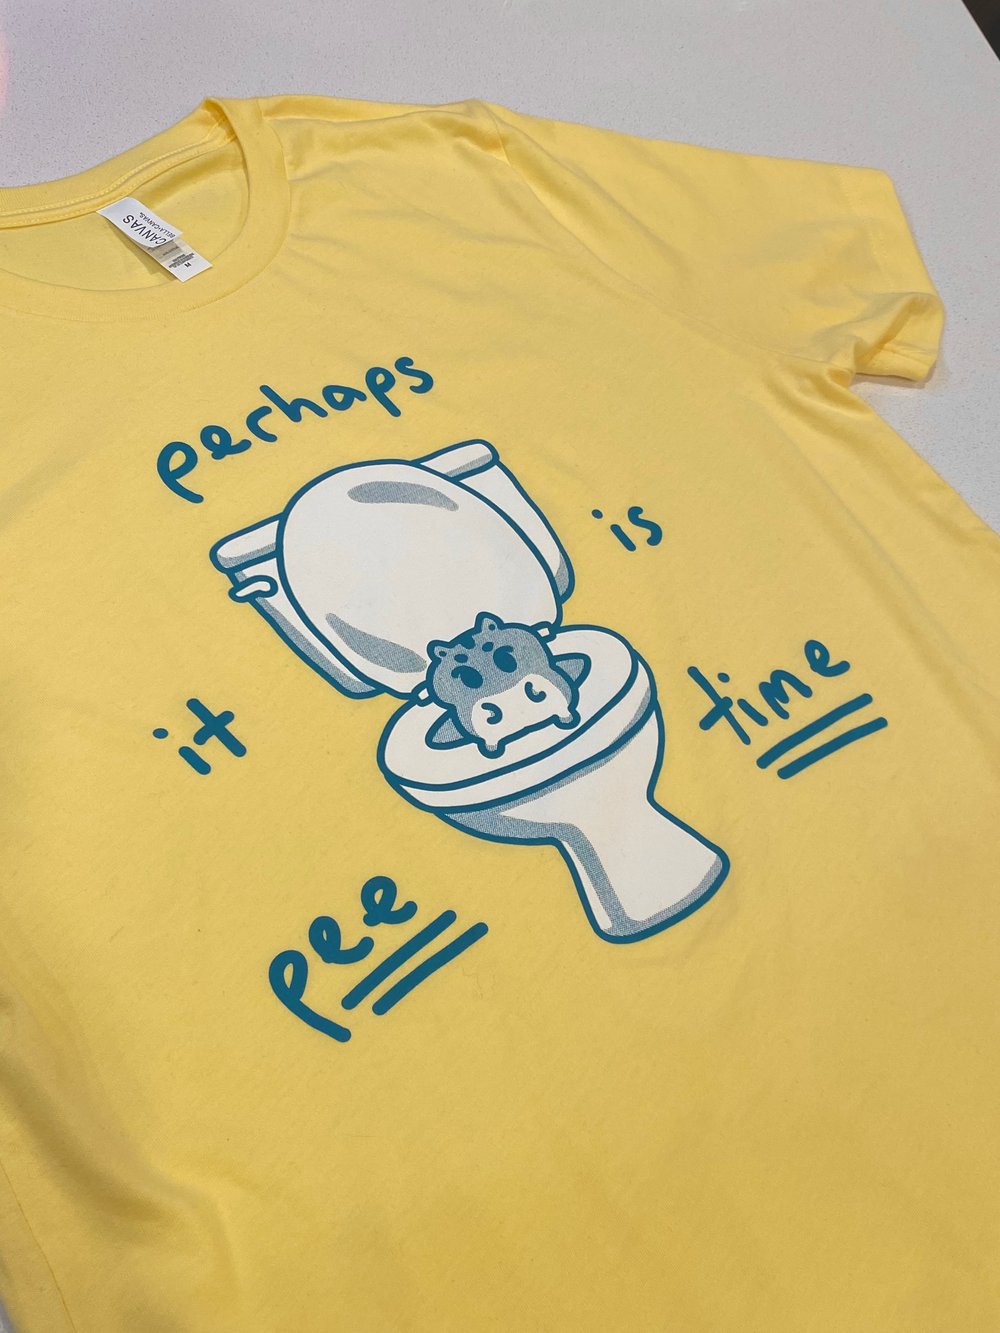 Pee Time T-Shirt